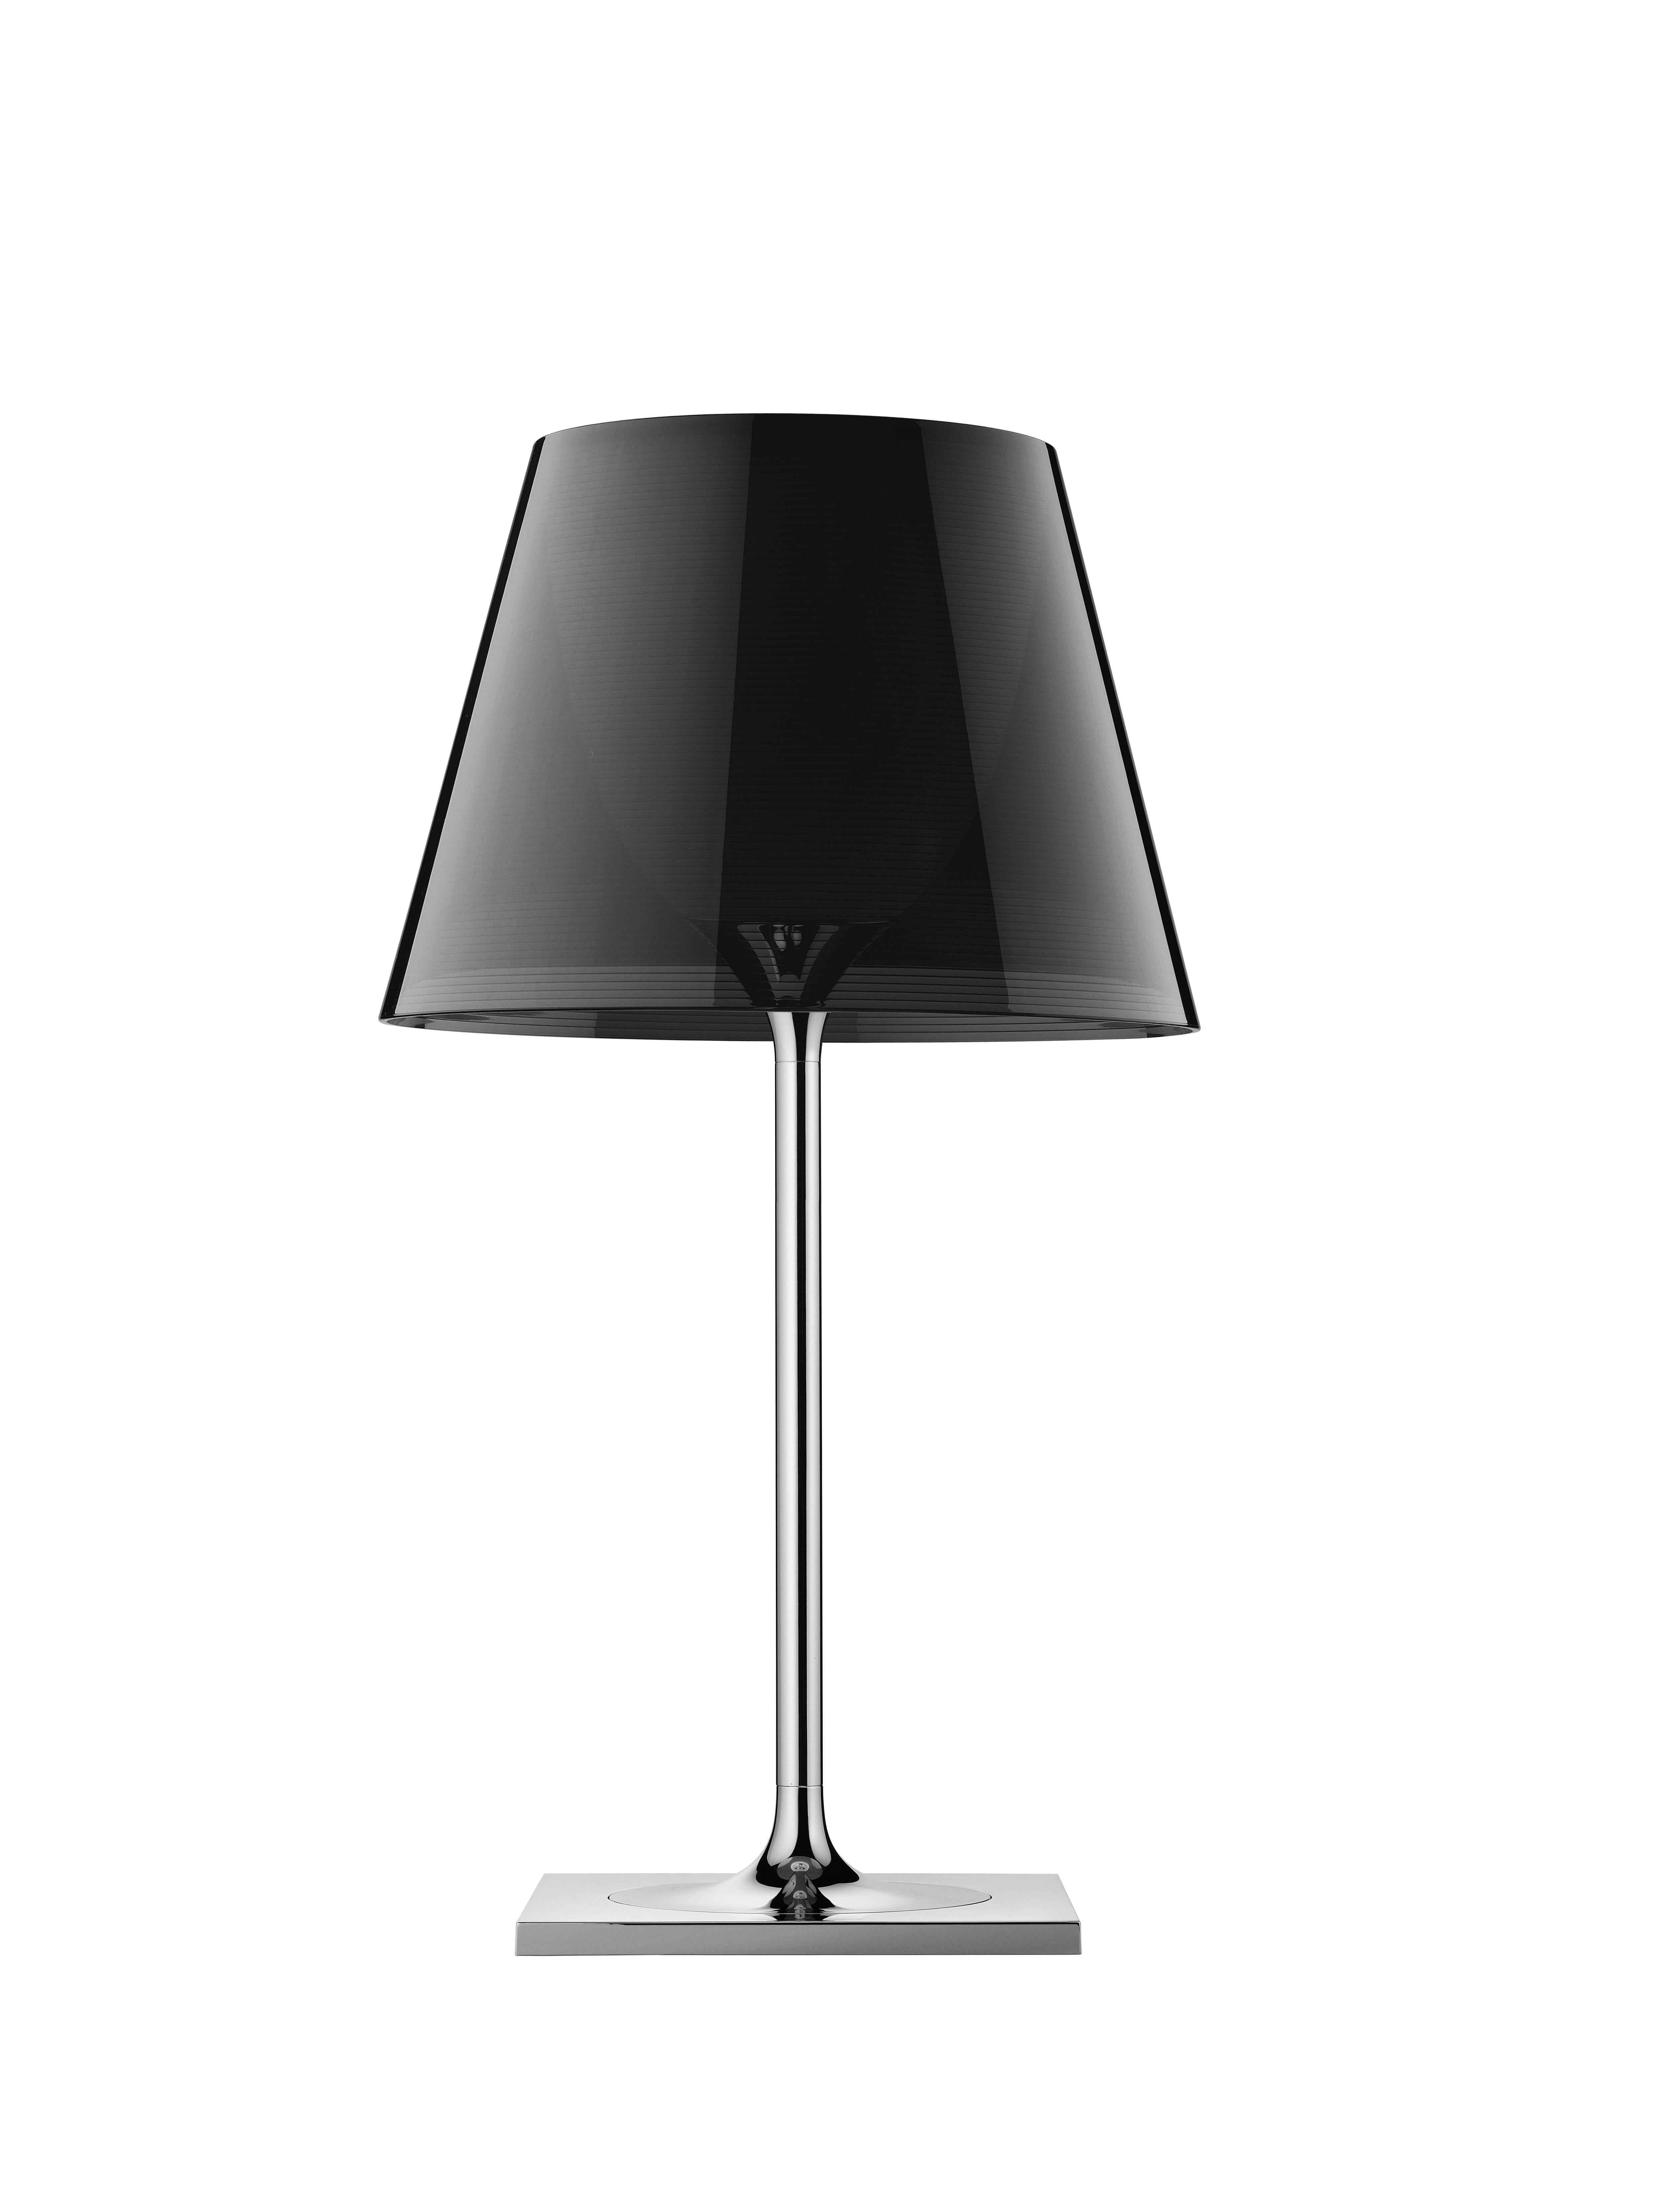 Membre de la famille des produits Ktribe, cette lampe de table inspirante fournit une lumière diffuse à travers un diffuseur transparent qui déplace gracieusement le regard vers le haut. La base, la tige et le support du diffuseur sont en alliage de